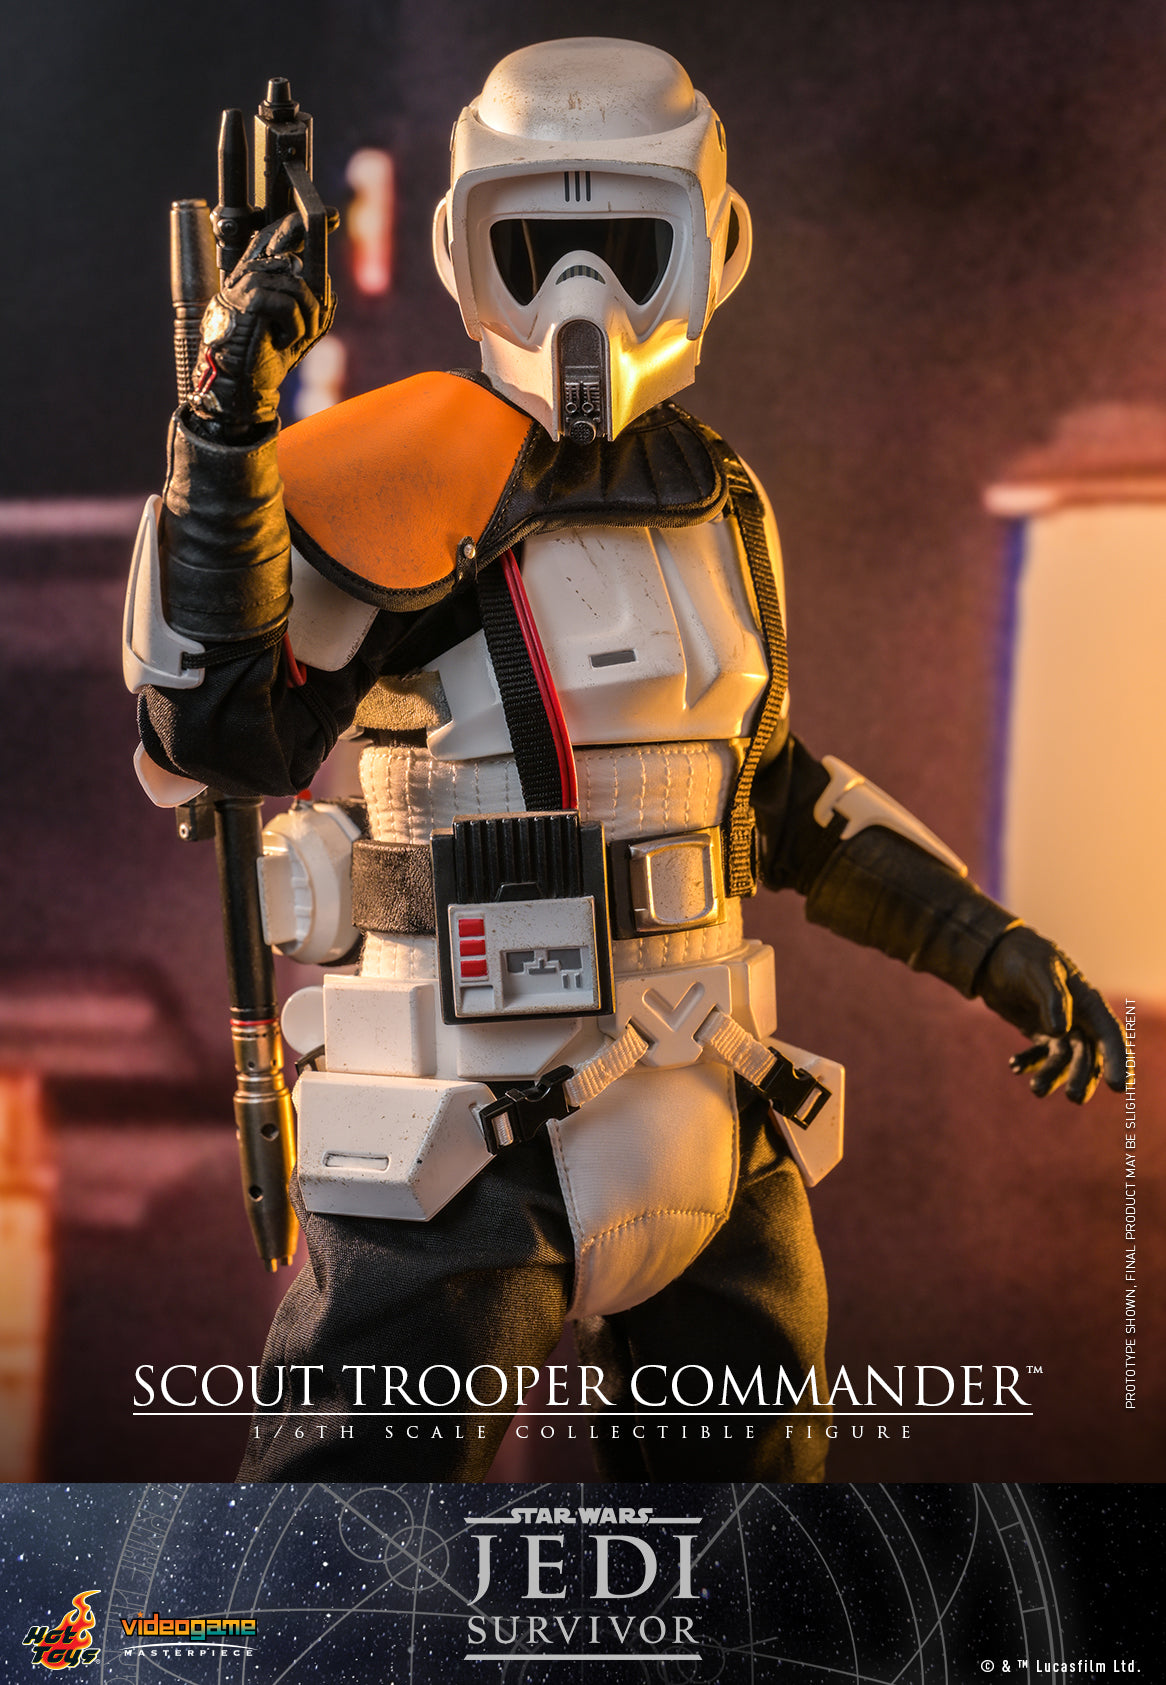 Hot Toys - VGM53 - Star Wars: Jedi Survivor - Scout Trooper Commander